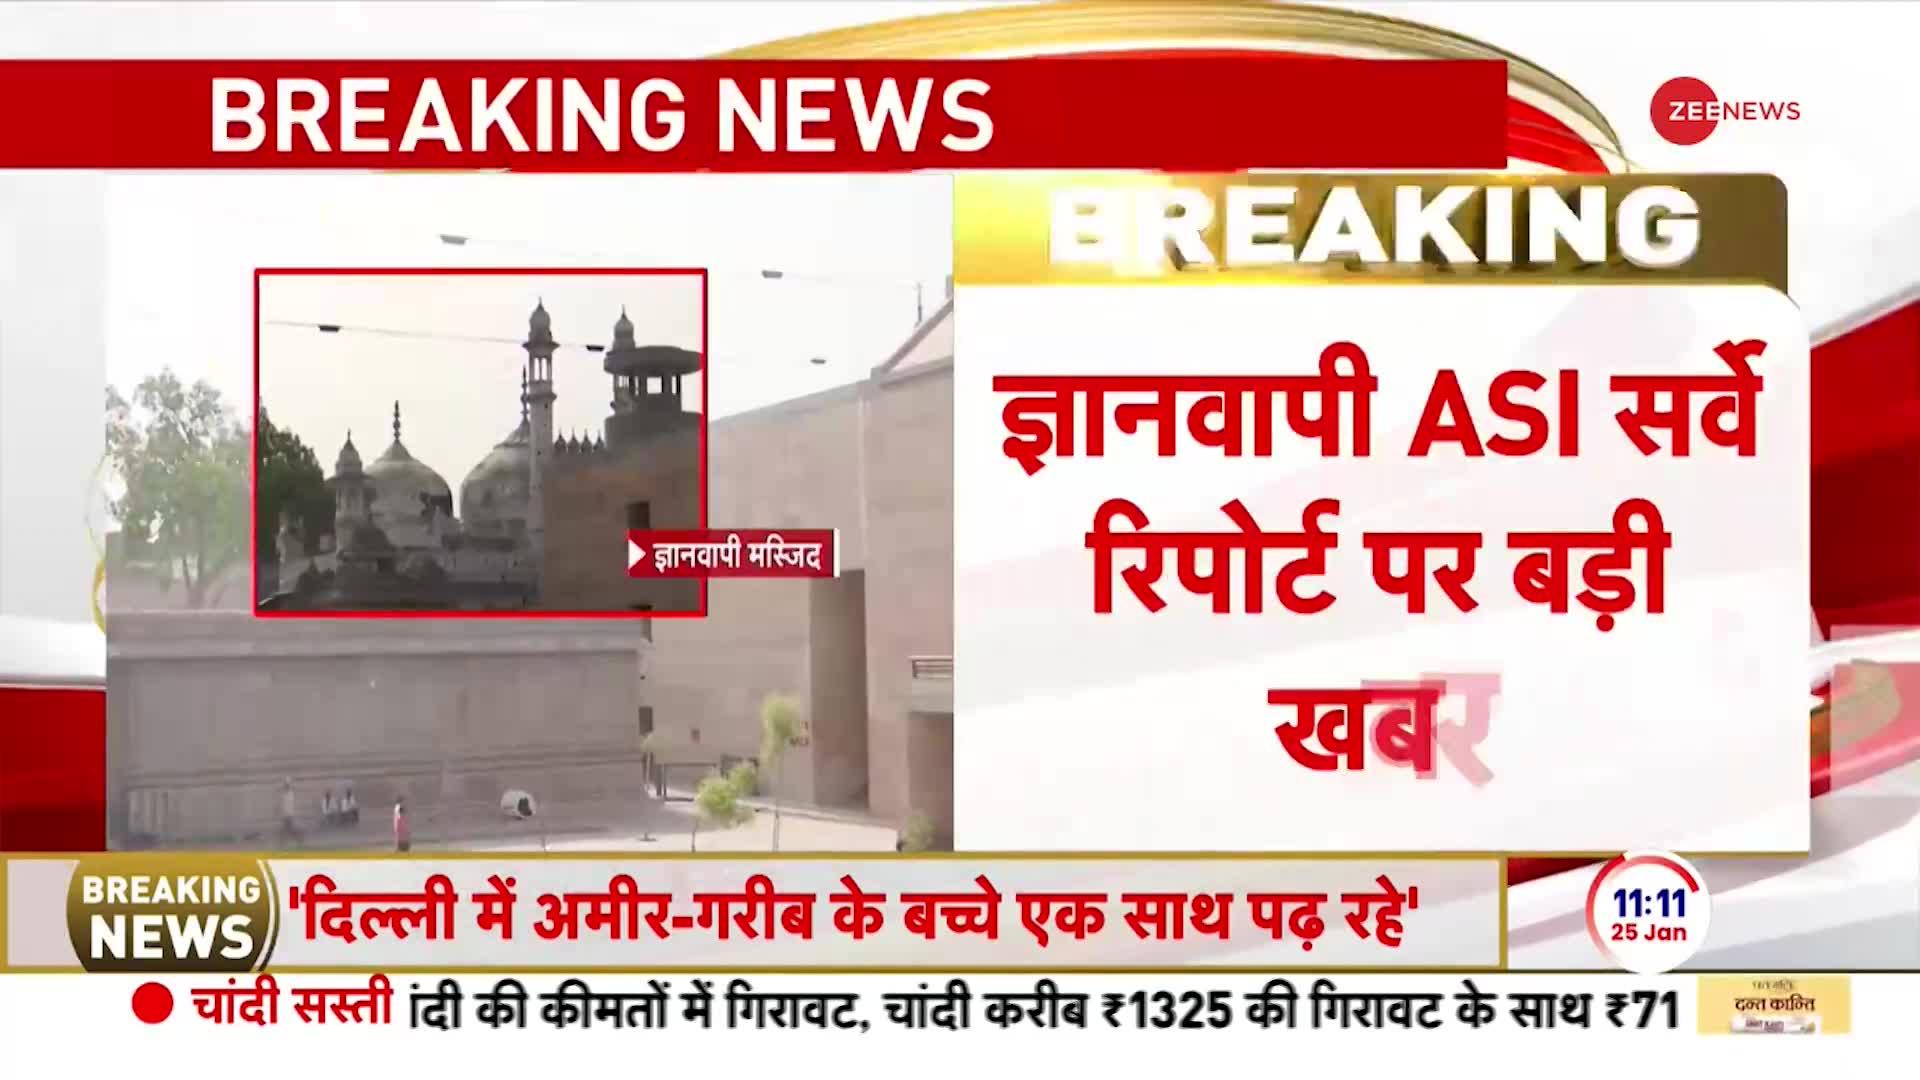 Gyanvapi Mosque Case: ज्ञानवापी ASI सर्वे रिपोर्ट पर बड़ी खबर, हिंदू पक्ष ने रिपोर्ट की मांगी कॉपी